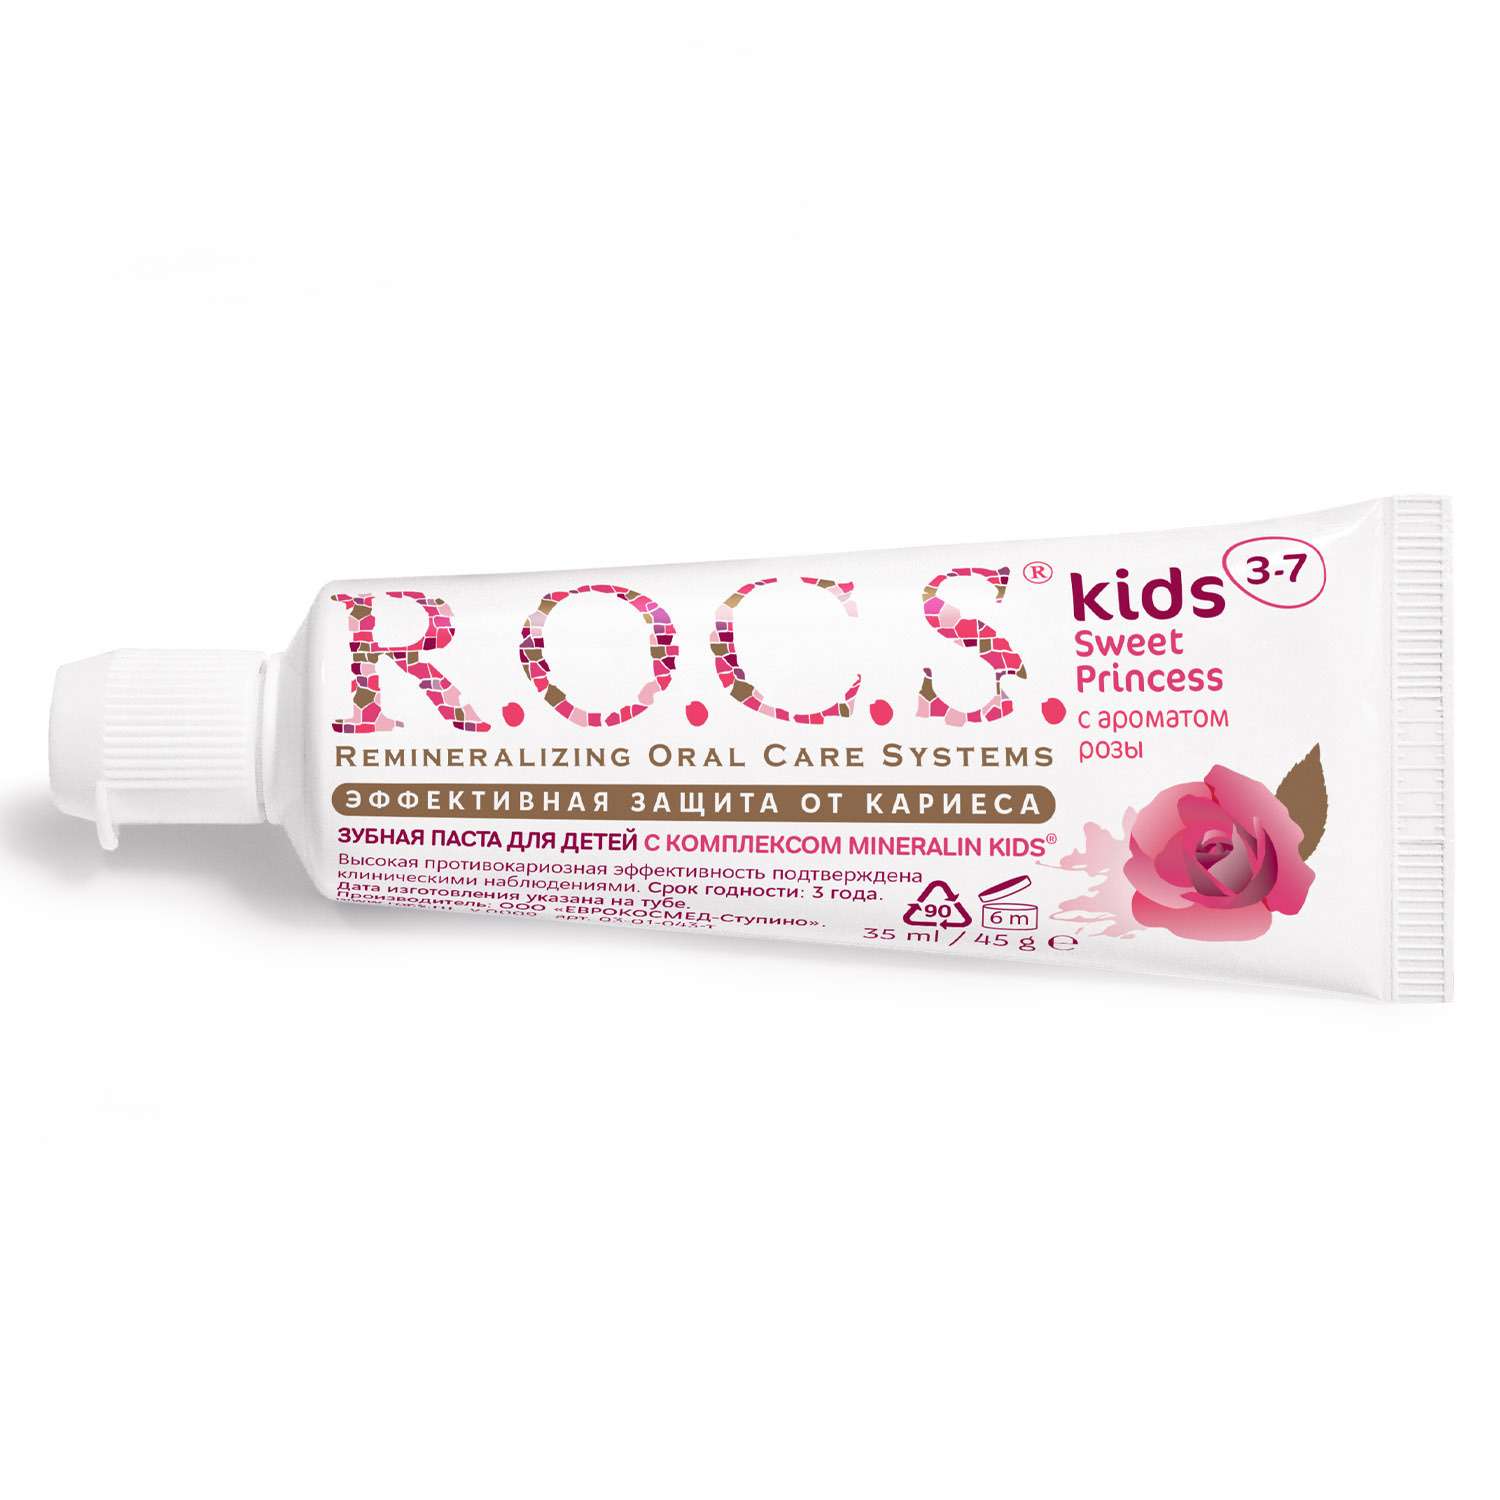 Зубная паста R.O.C.S. Kids Sweet Princess с ароматом Розы 3-7 лет. 45гр. - фото 1